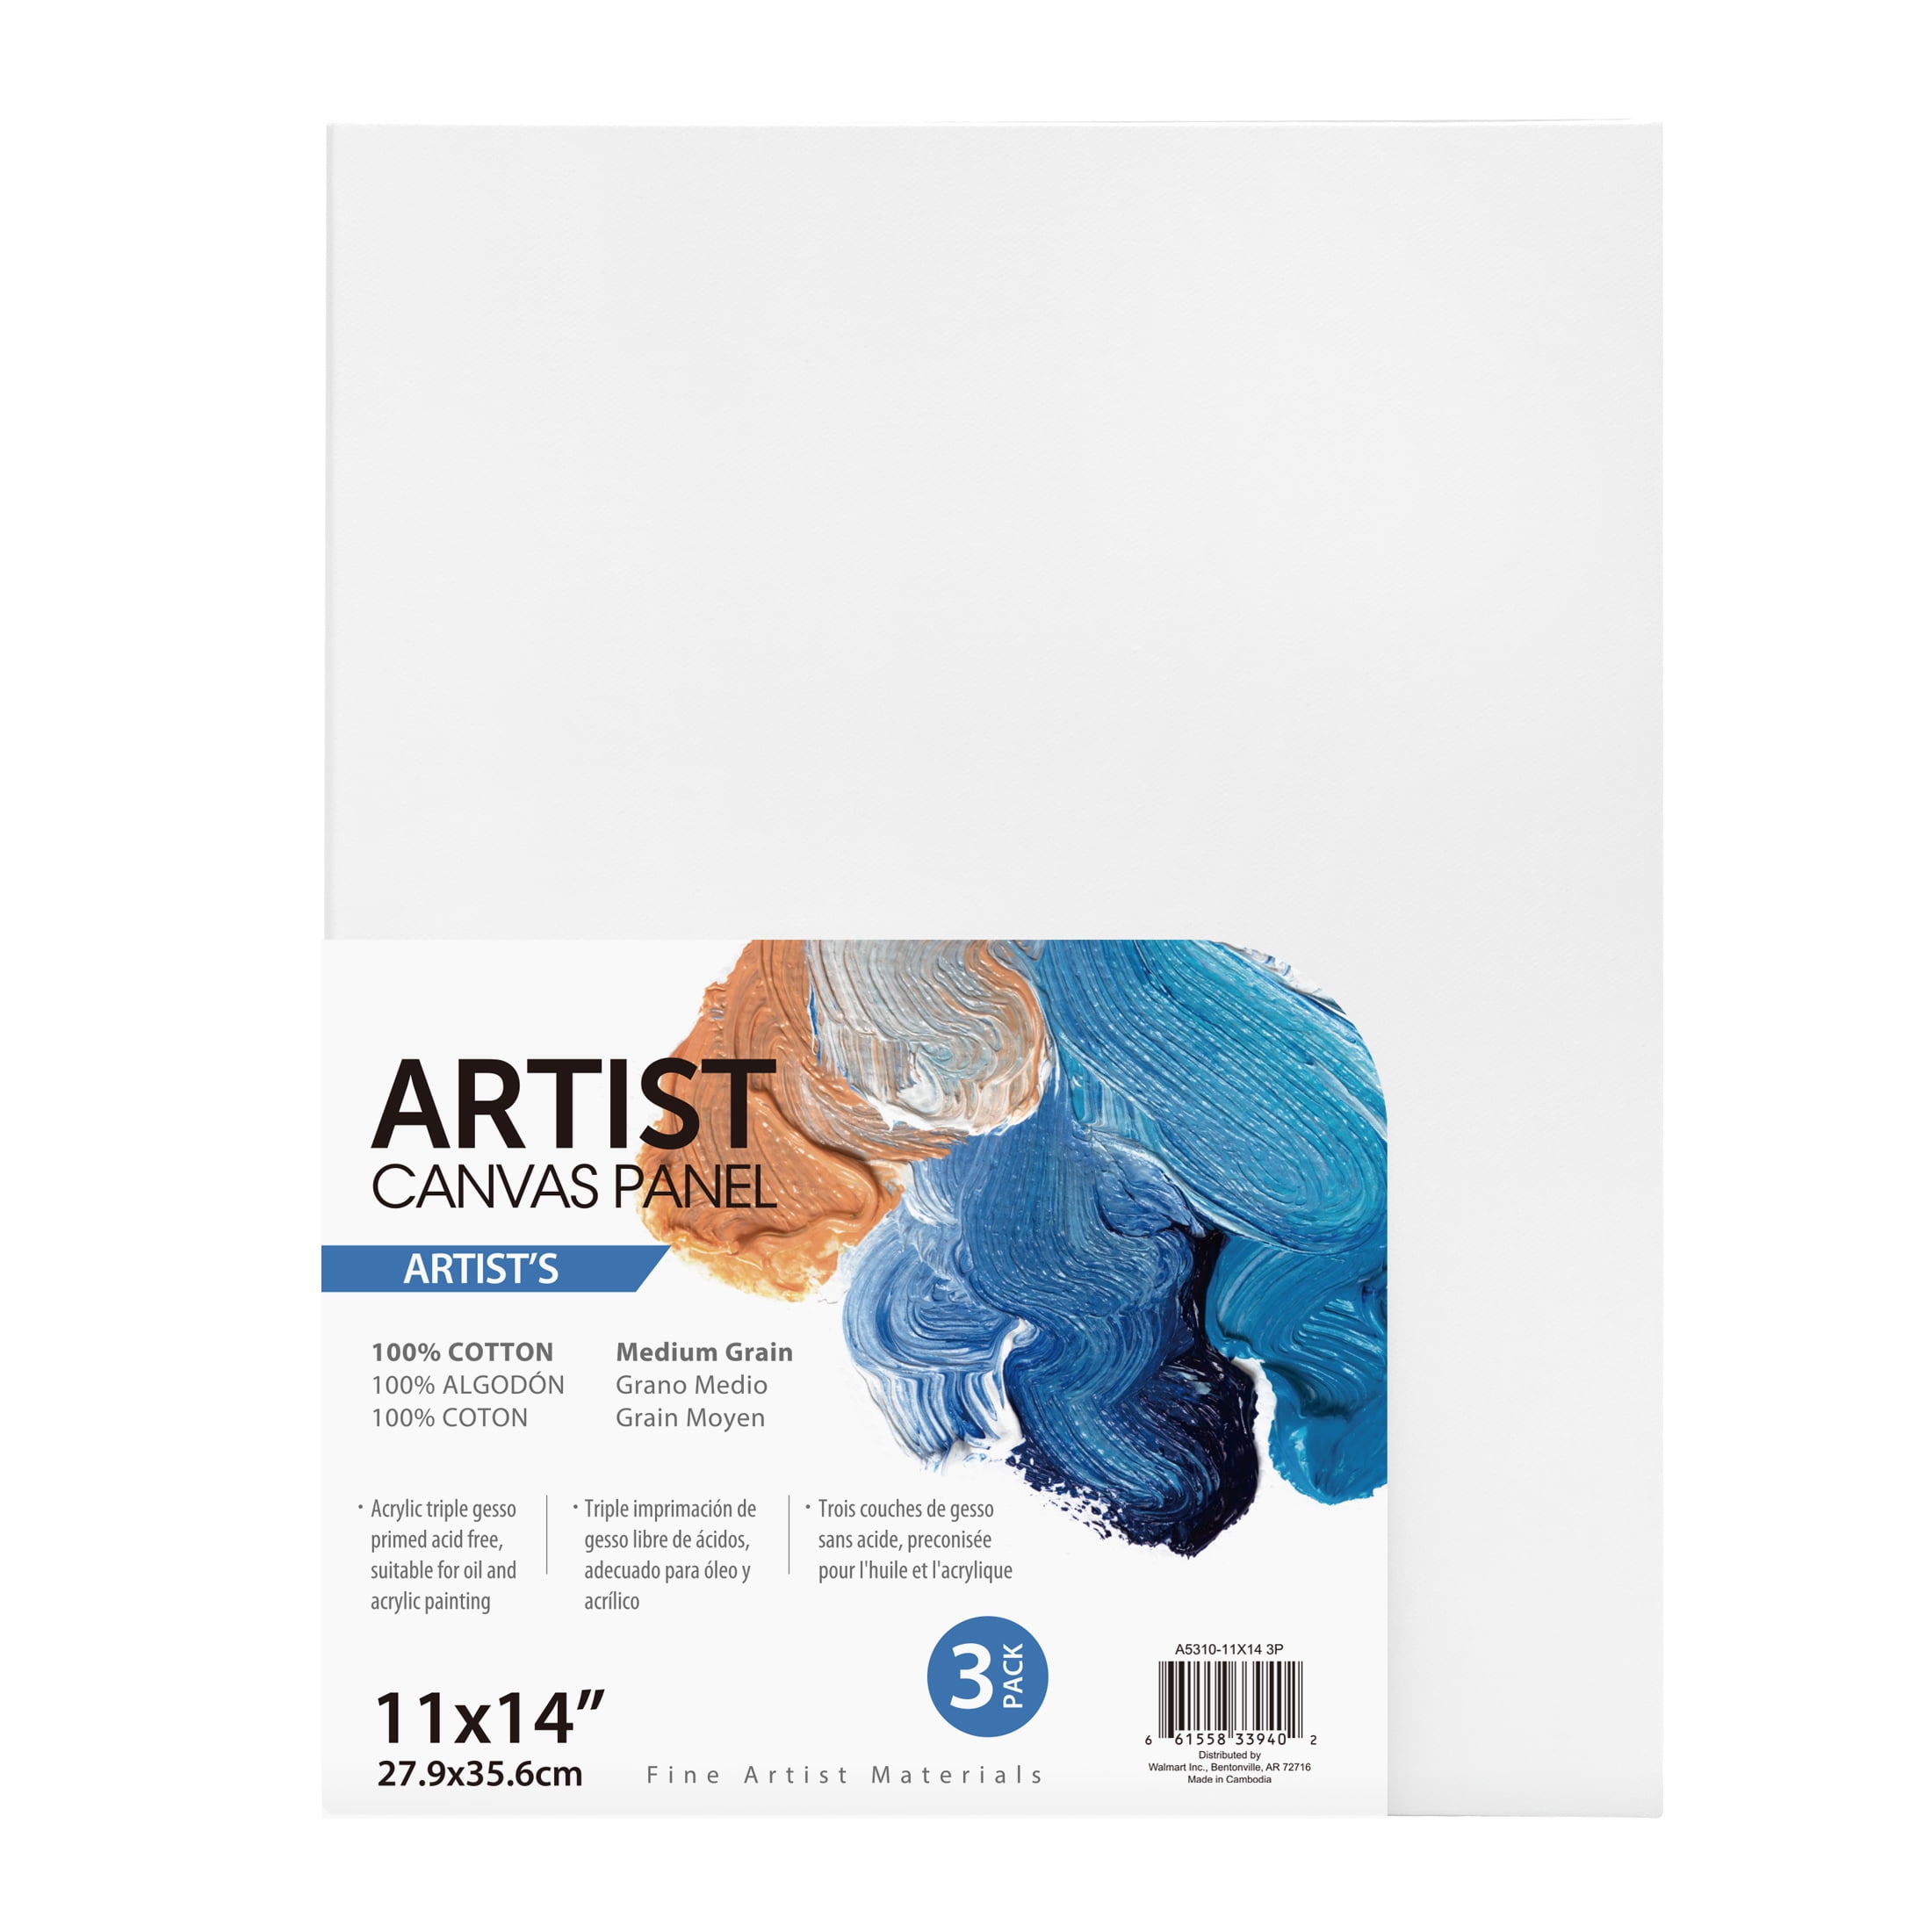 Artist Canvas Panel, 100% Cotton Acid Free White Canvas, 11"X14", 3 Pieces